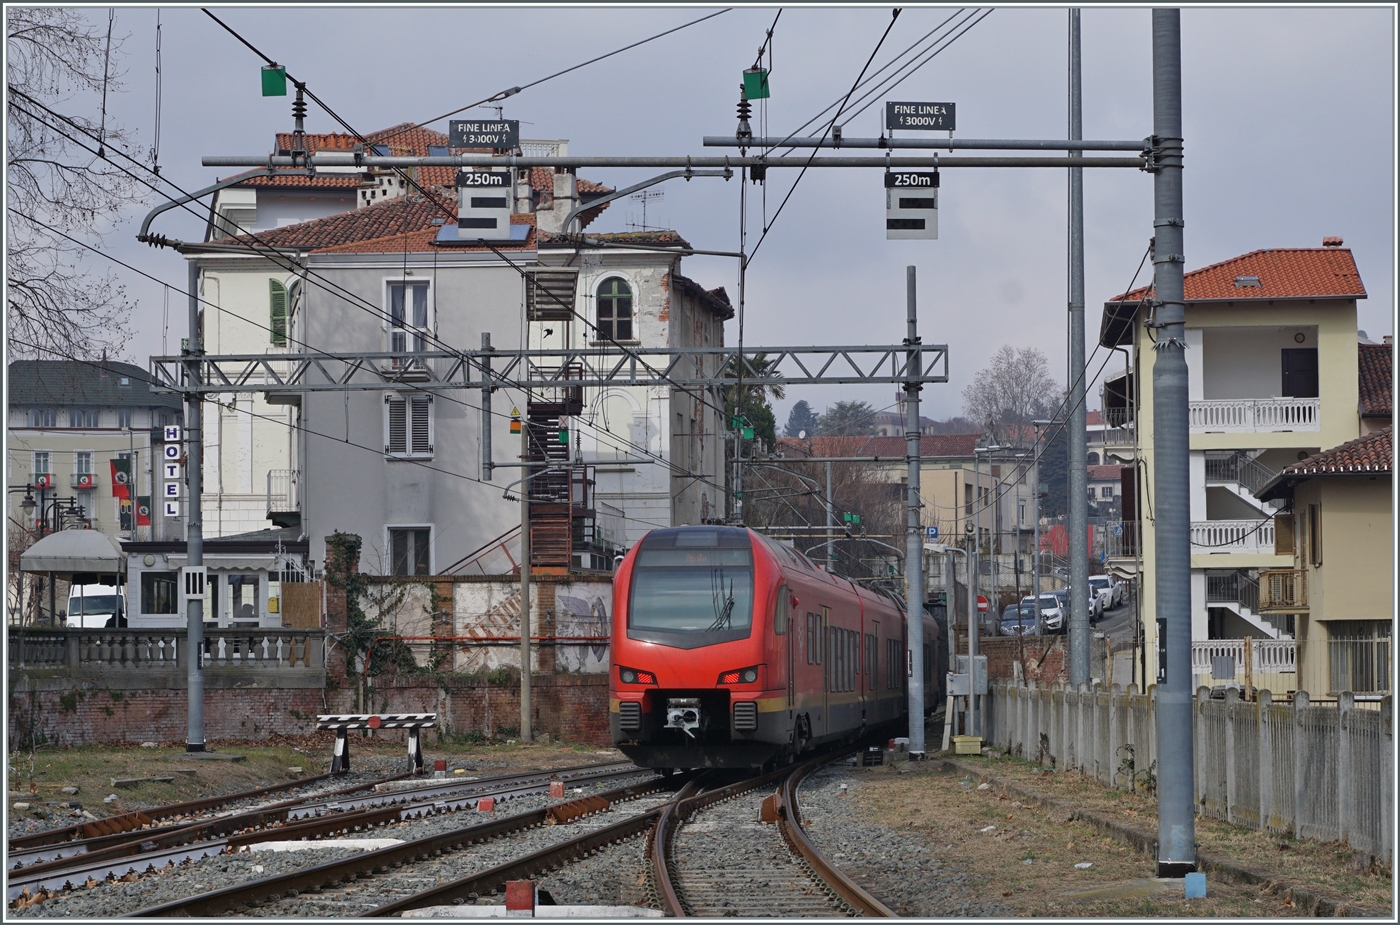  Fine Line a 3000 Volt  steht an den Fahrleitungsmasten in Ivrea angeschrieben. Folglich verlässt der nun abgebügelte BTR 813 von Torion nach Aosta den Bahnhof mit thermischer Energie. 

24. Februar 2023